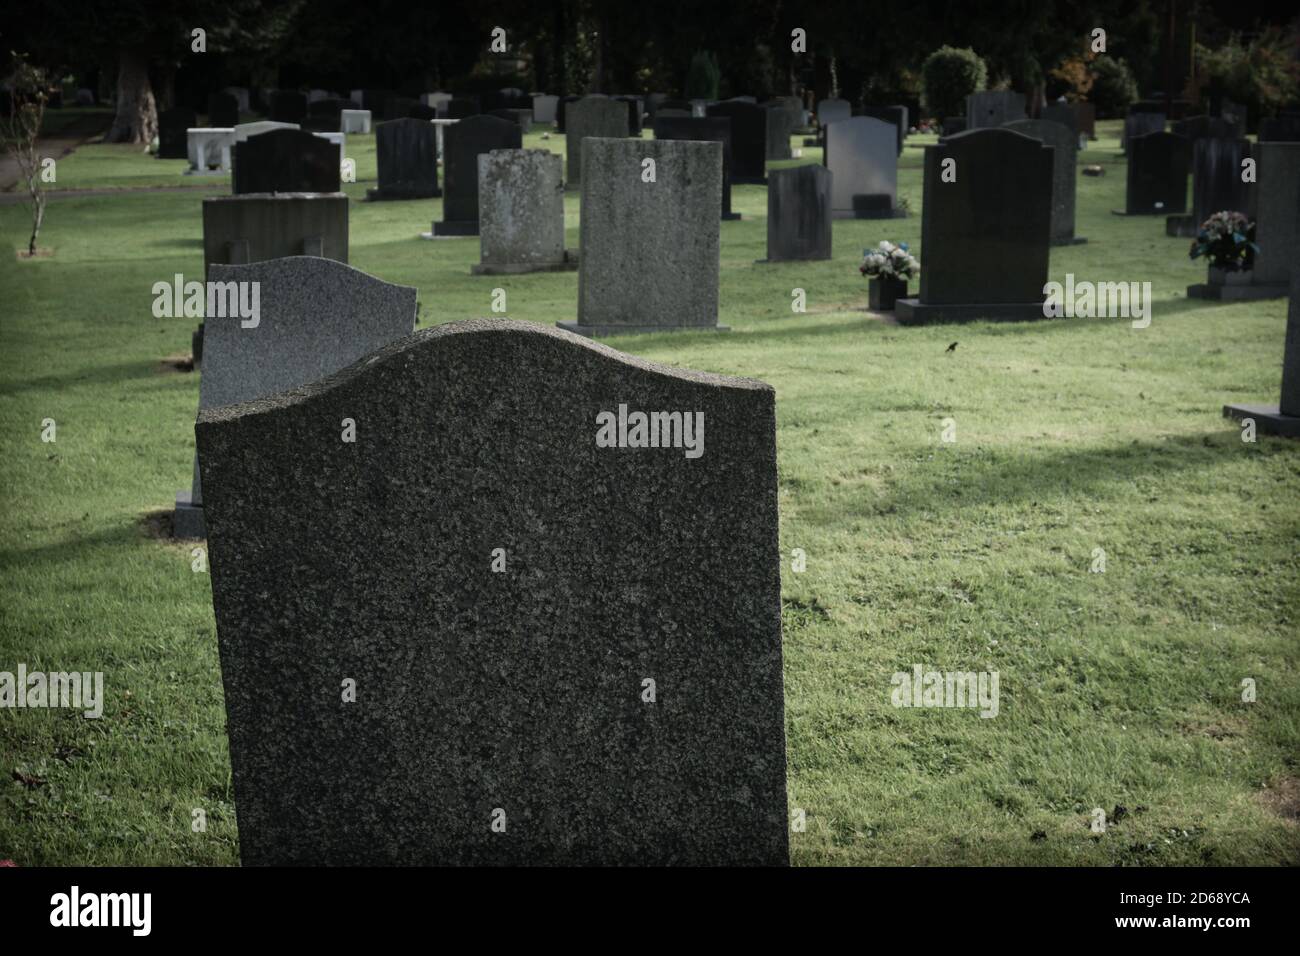 Pietre di tomba vuote o marcatori in un cimitero con un filtro scuro e cupo applicato all'immagine Foto Stock